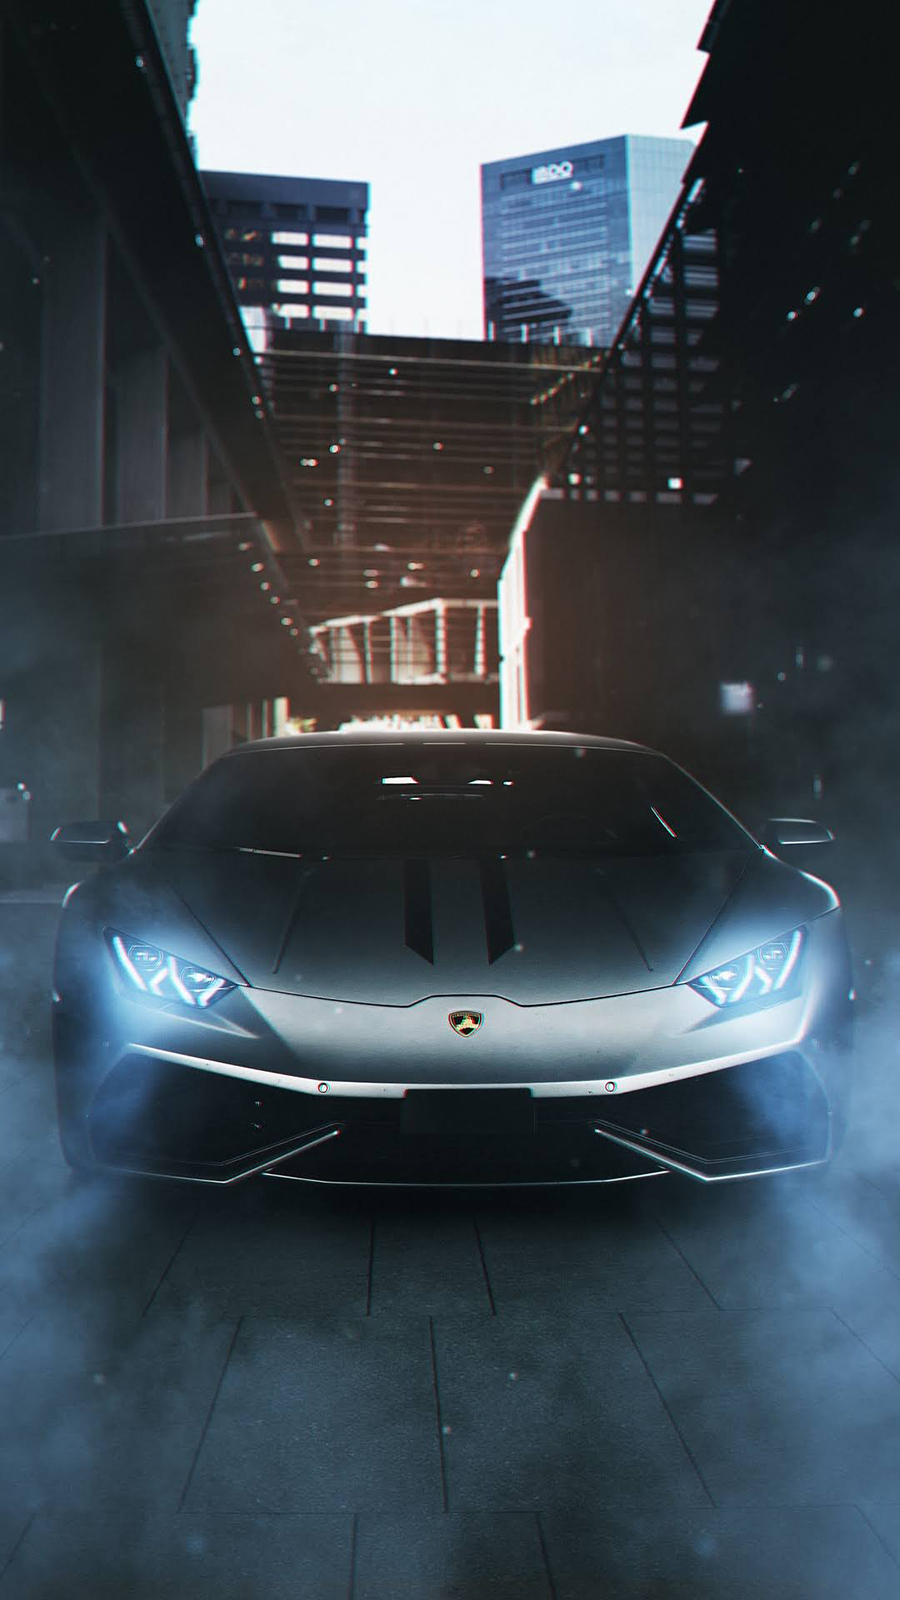 Lamborghini Car Hd Wallpapers For Mobile